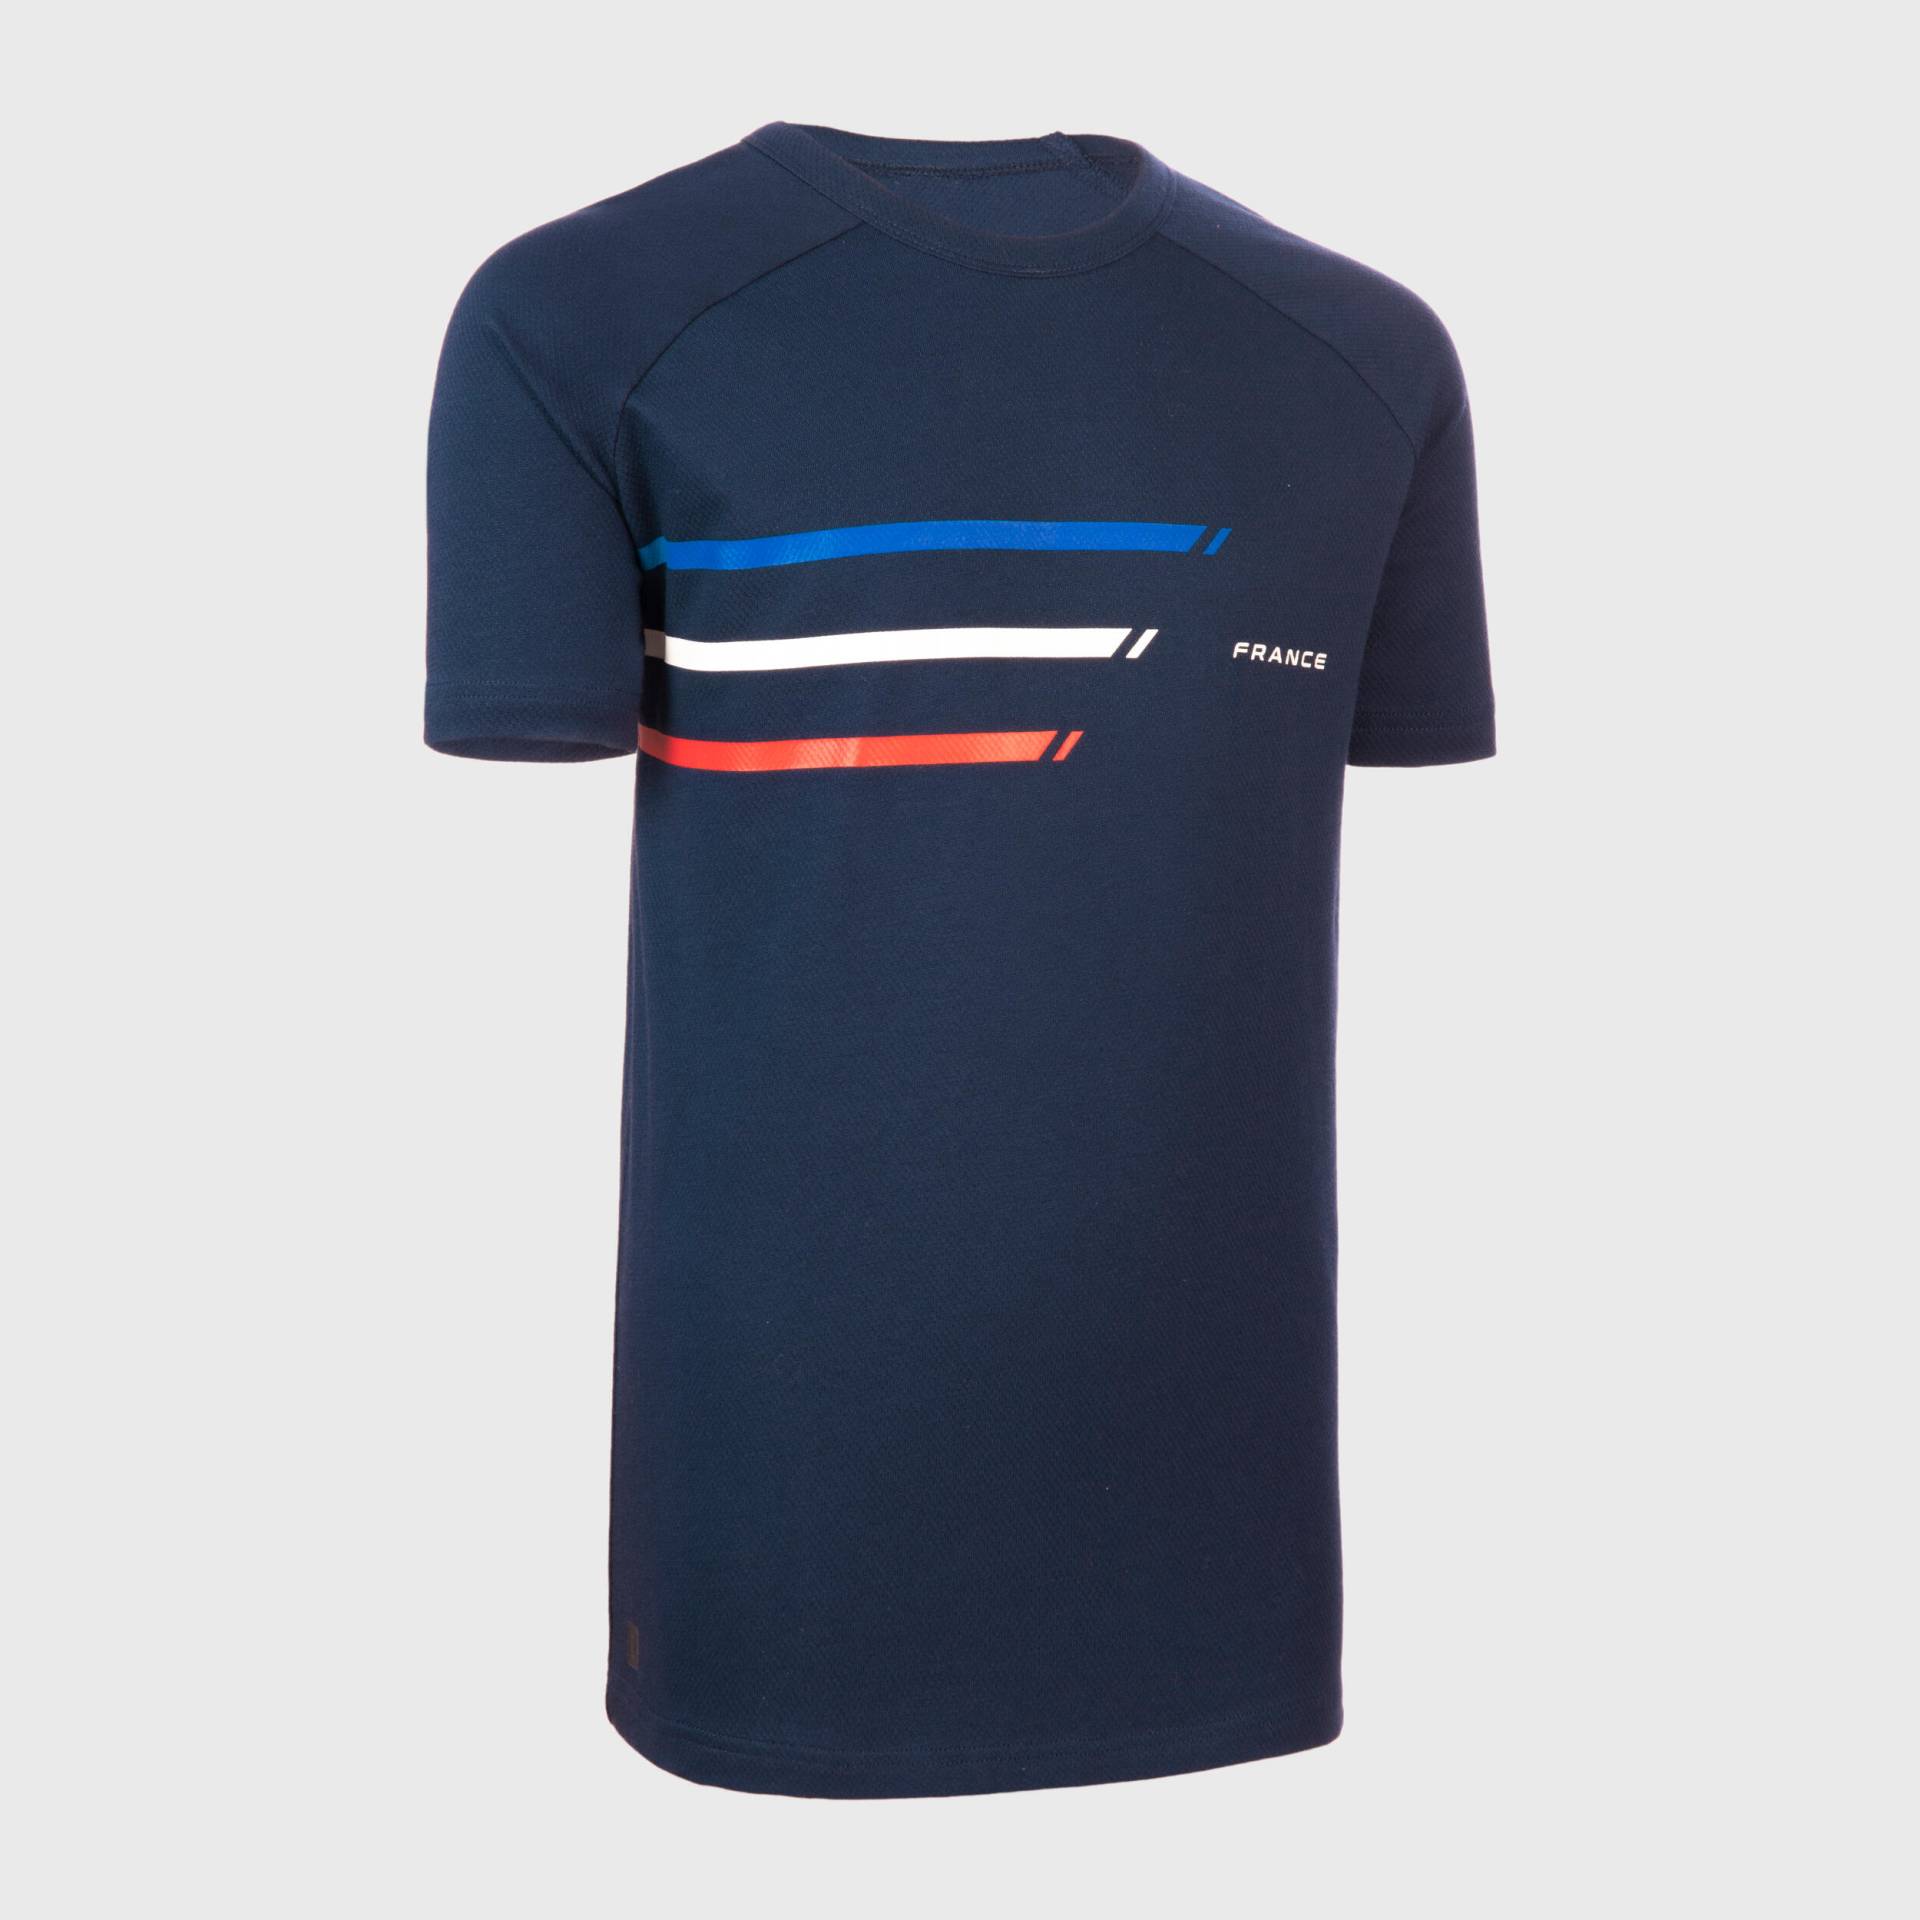 Kinder Rugby T-Shirt kurzarm - R100 Frankreich blau von OFFLOAD